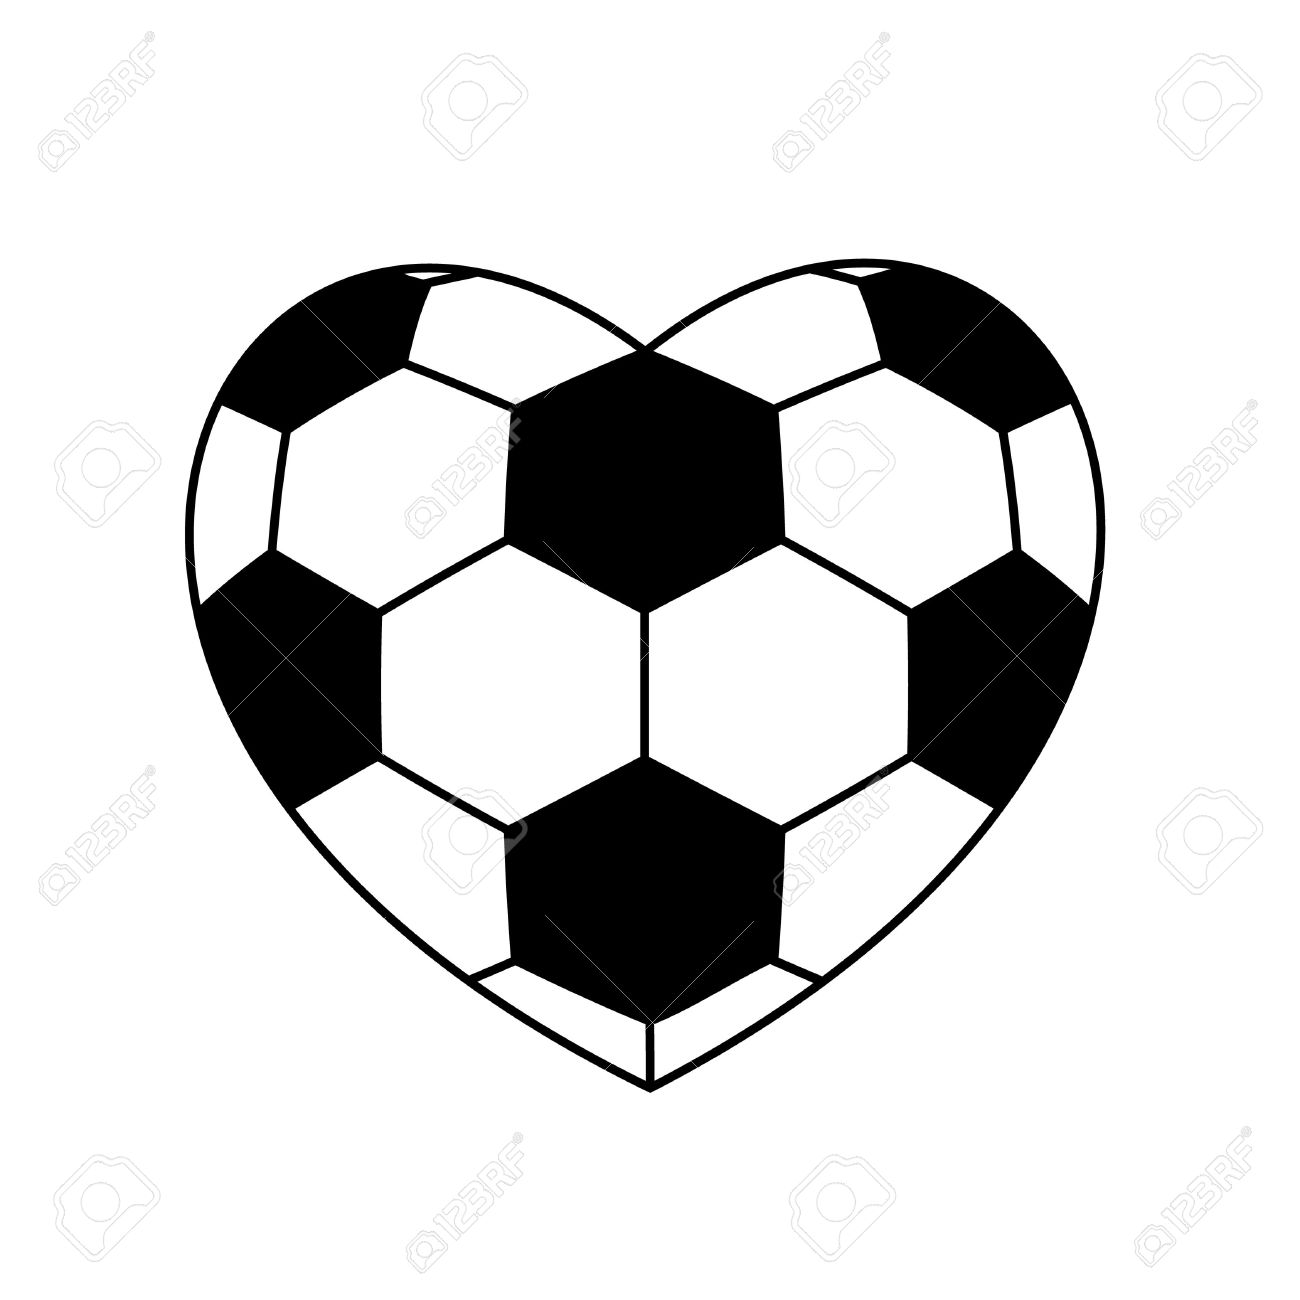 Soccer ball heart.